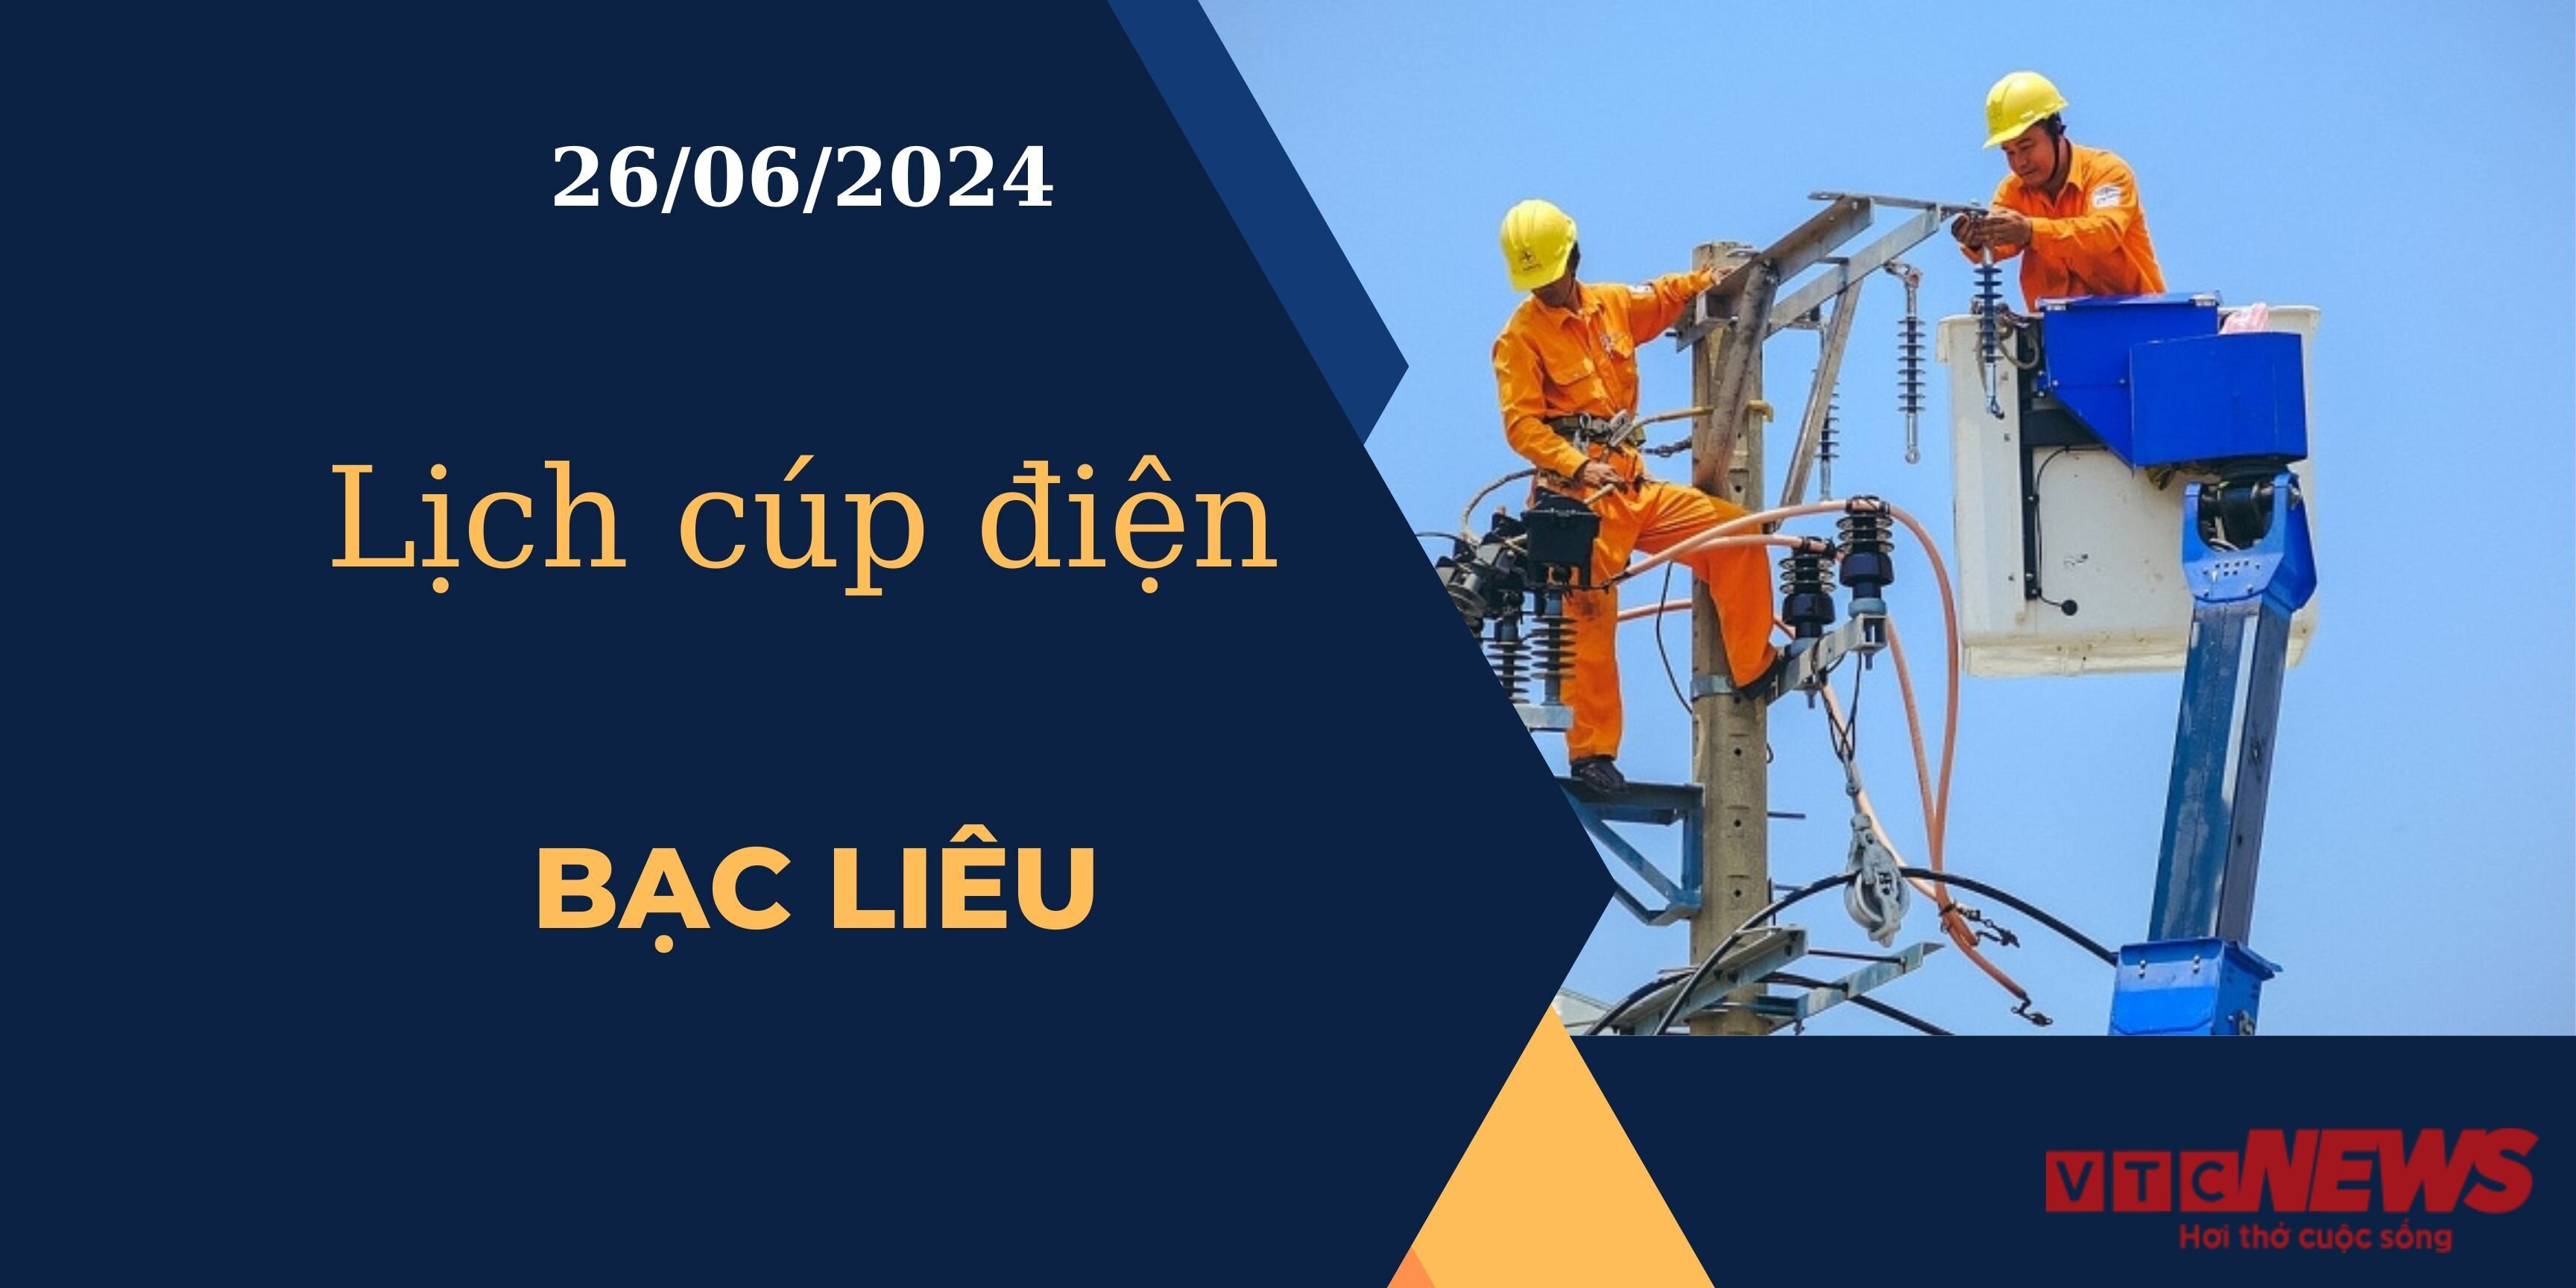 Lịch cúp điện hôm nay ngày 26/06/2024 tại Bạc Liêu